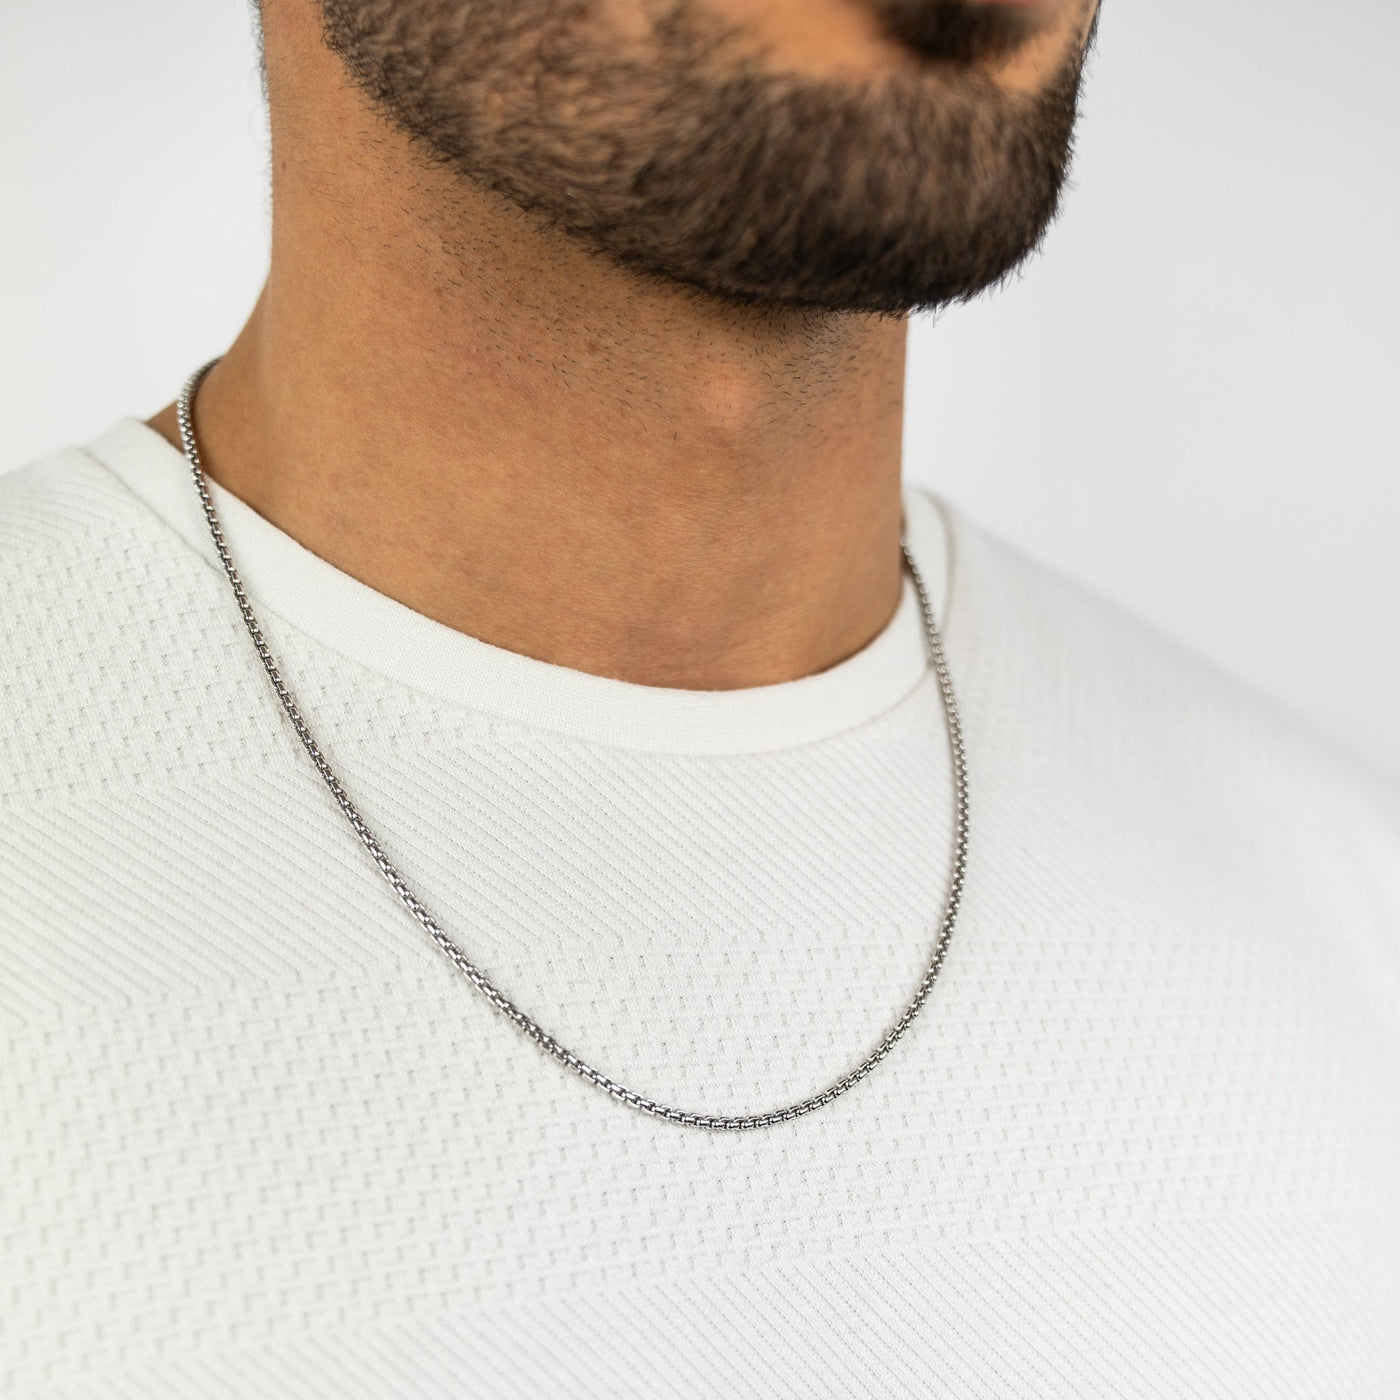 IDENTIM® Herren Halskette Herrenkette Rund Venezianerkette 2.70mm 925 Rhodiniert Silber Silberkette